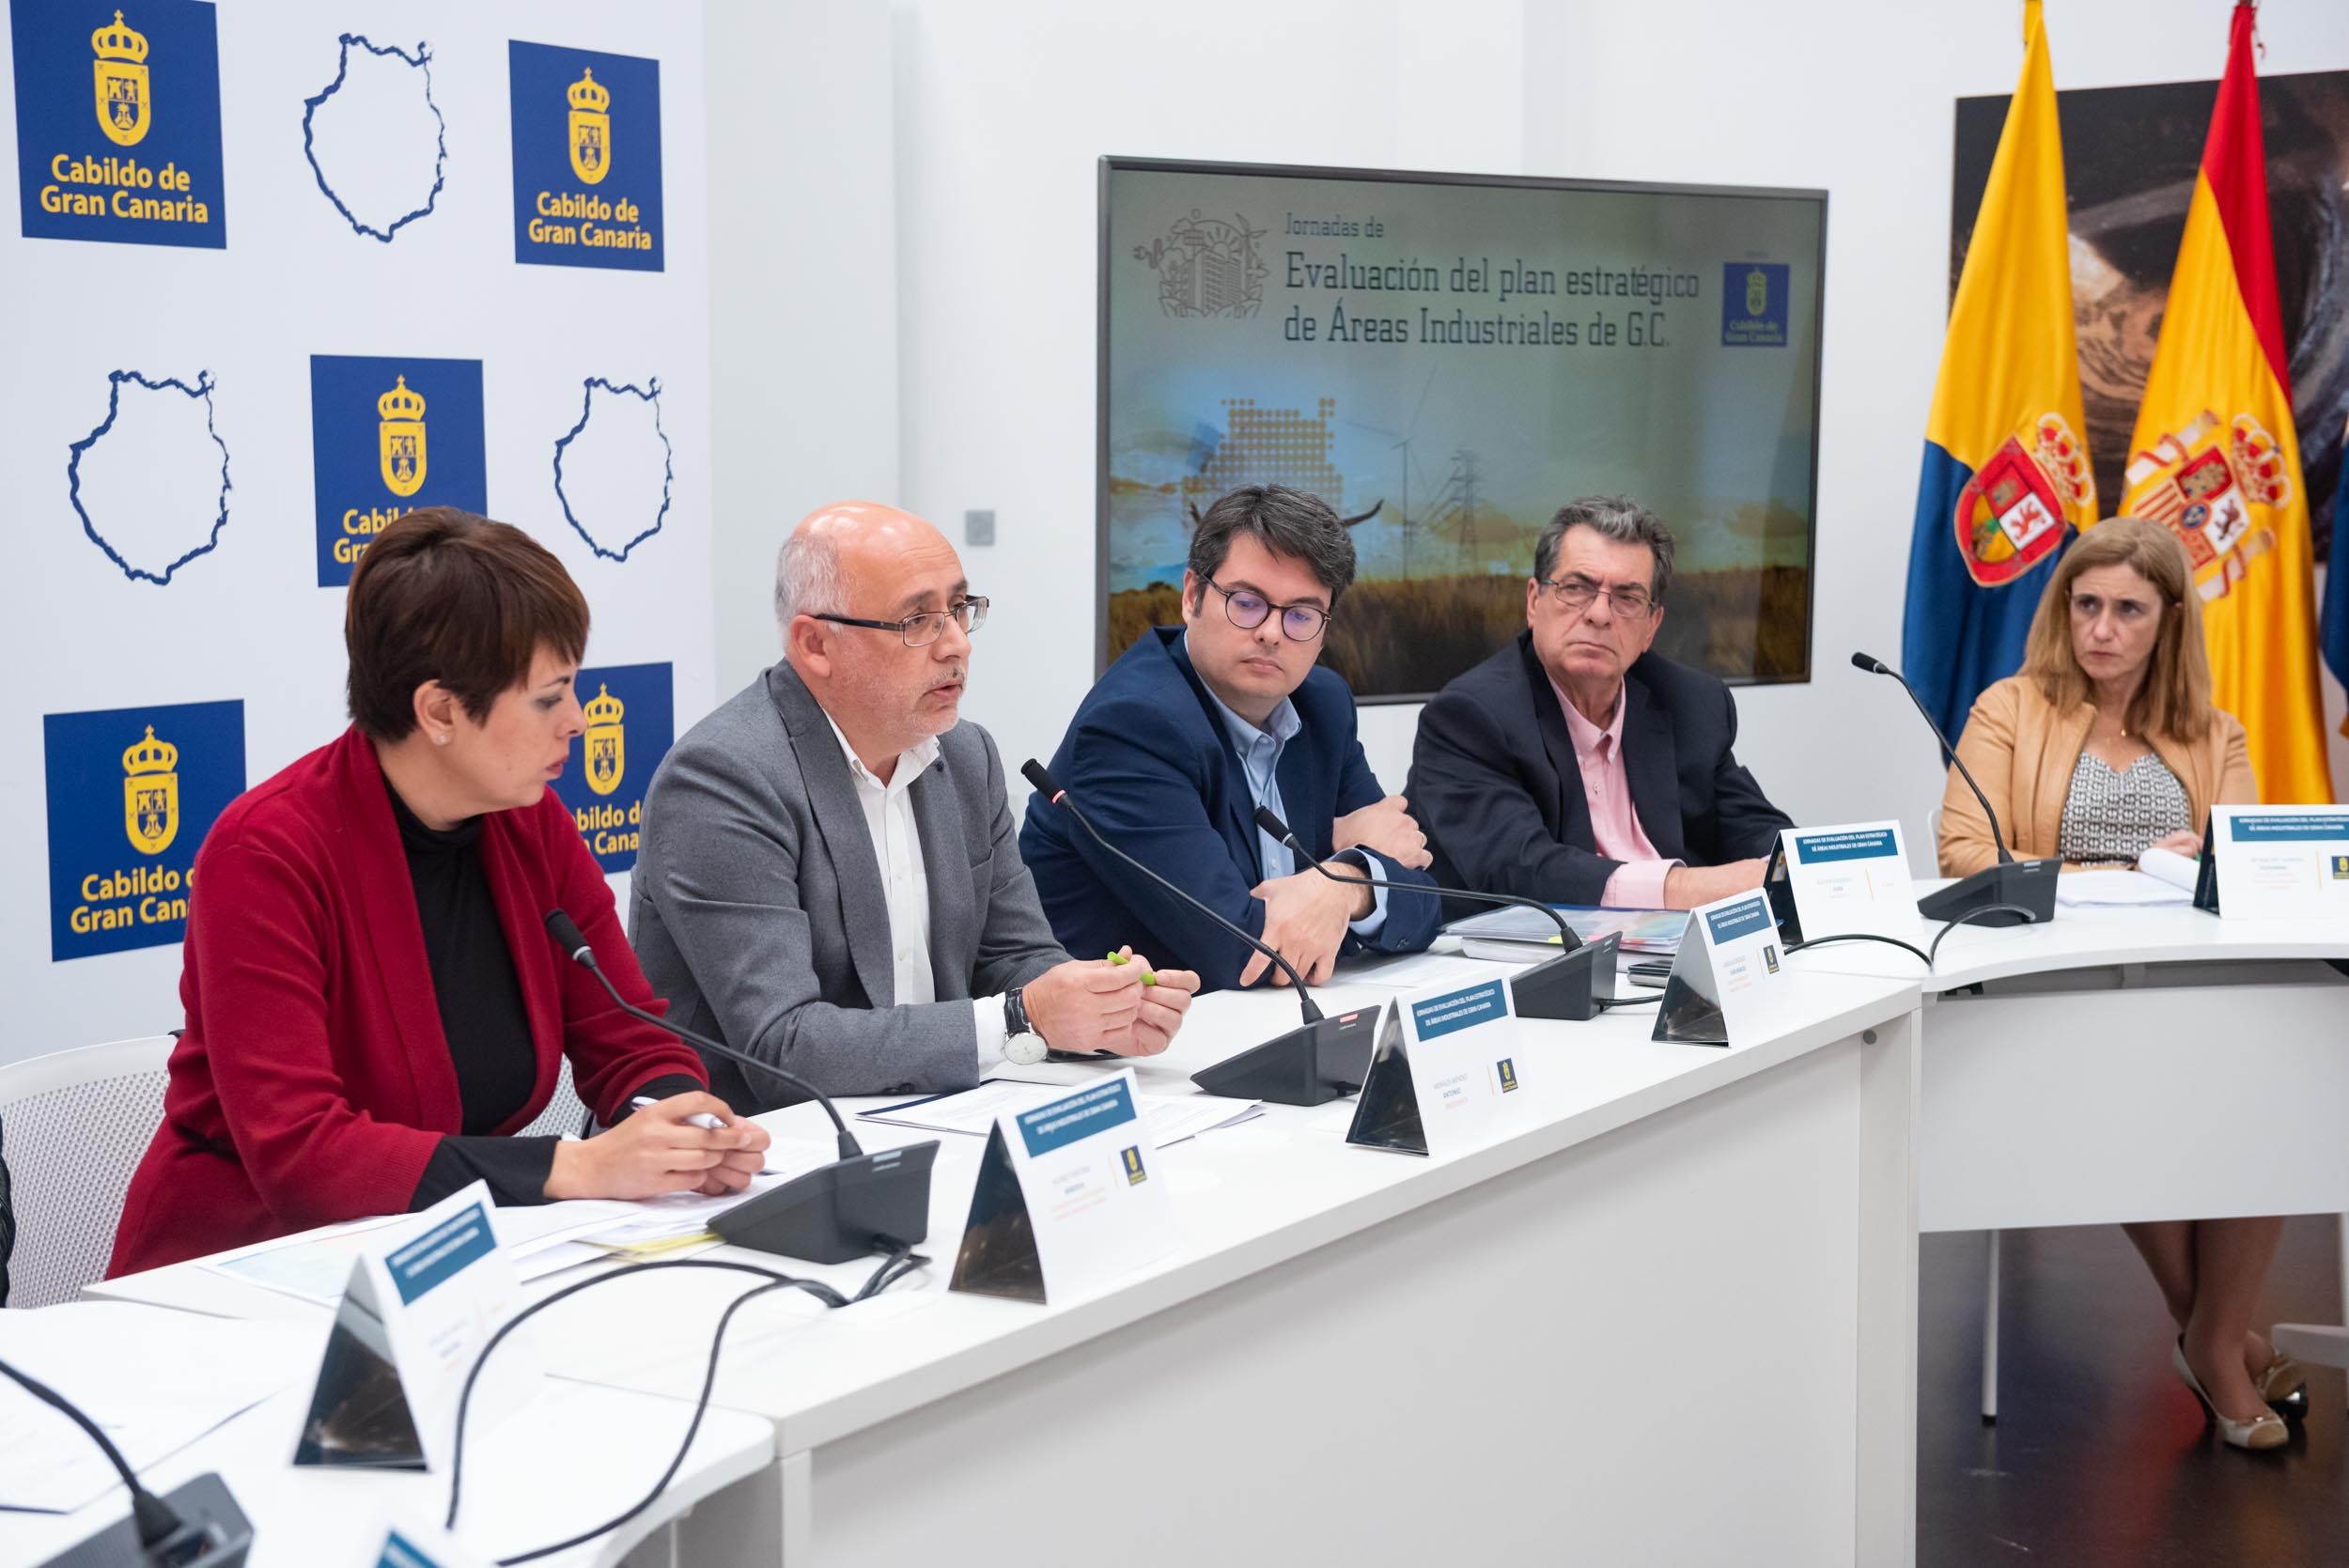 El Cabildo destina 10 millones en tres años a recuperar las zonas industriales de Gran Canaria como núcleos generadores de empleo y actividad